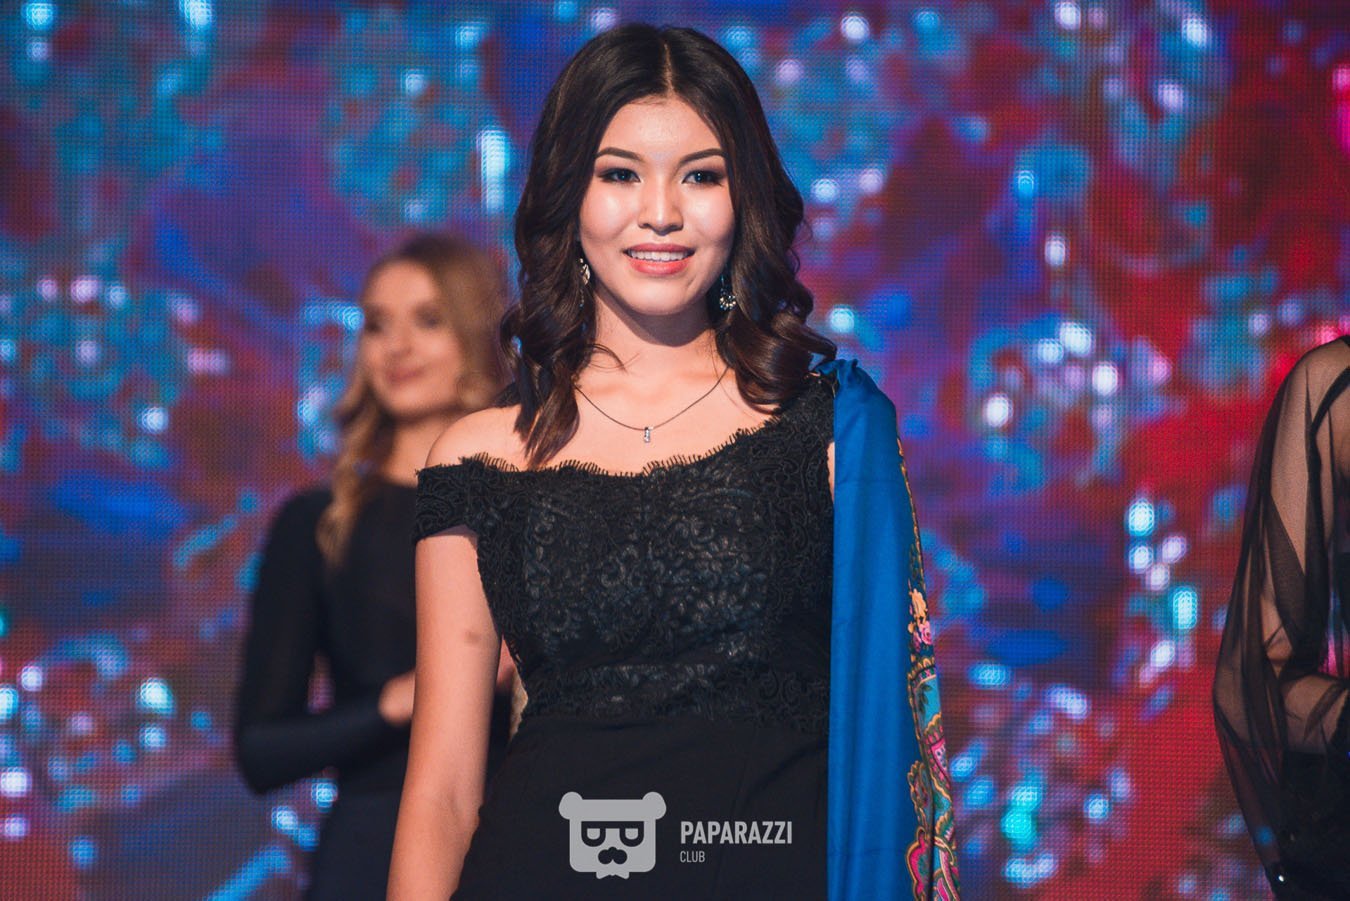  Финал конкурса Мисс Костанайская область 2018